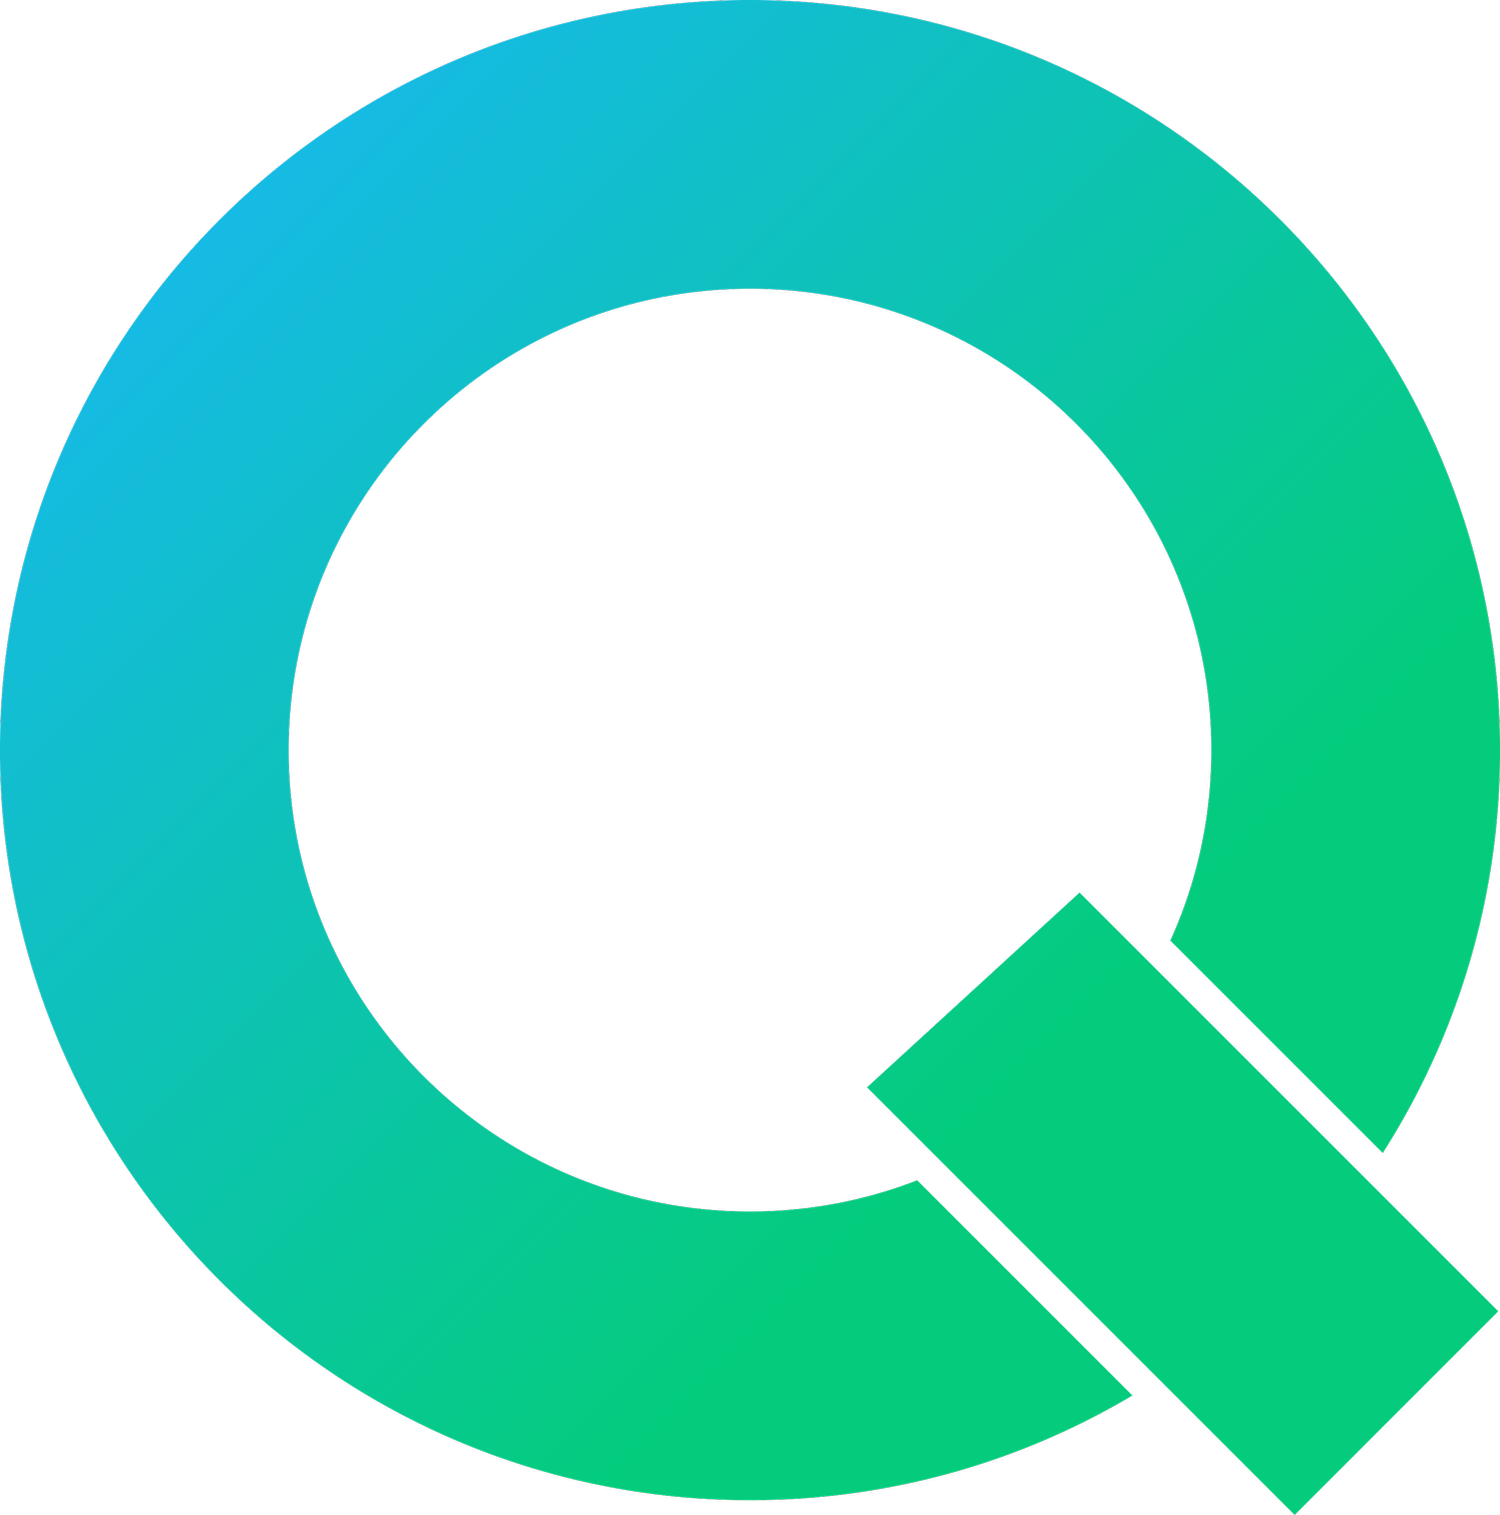 Qolsum | Salesforce services for complex businesses